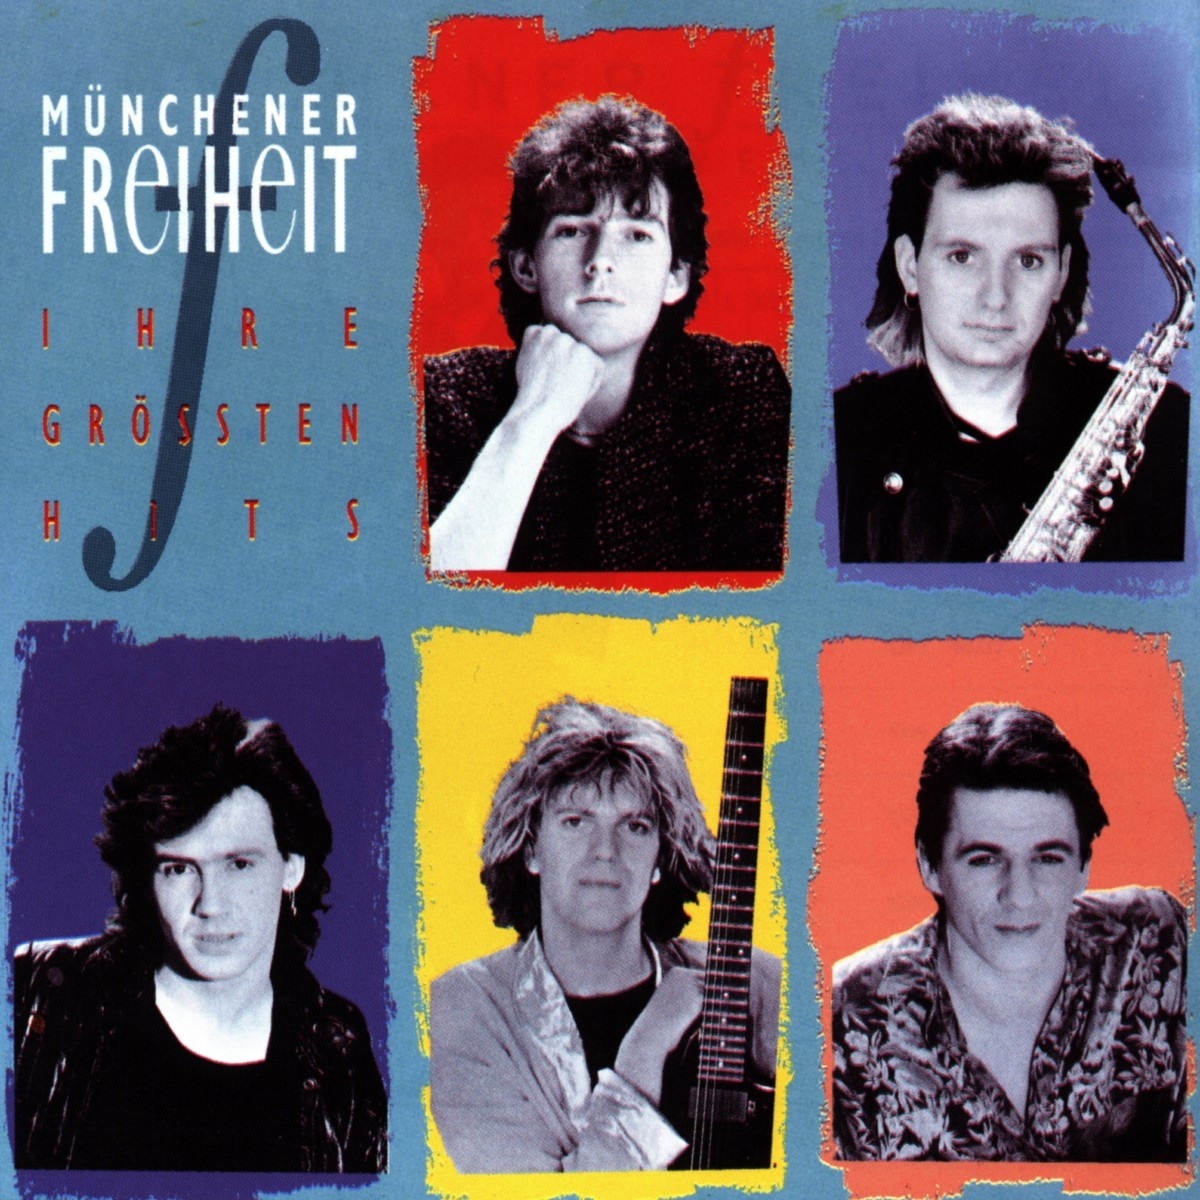 Ihre Größten Hits - Münchener Freiheit. (CD)